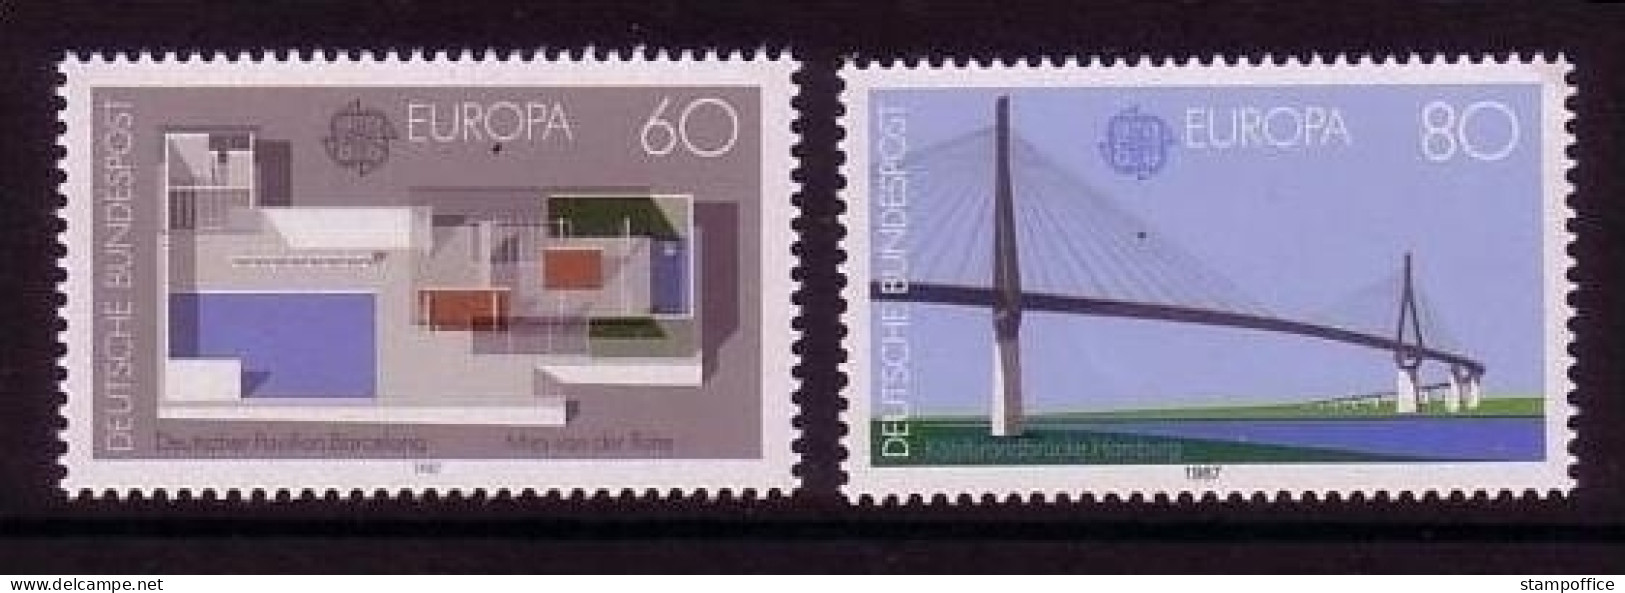 DEUTSCHLAND MI-NR. 1321-1322 POSTFRISCH(MINT) EUROPA 1987 MODERNE ARCHITEKTUR BRÜCKE - 1987